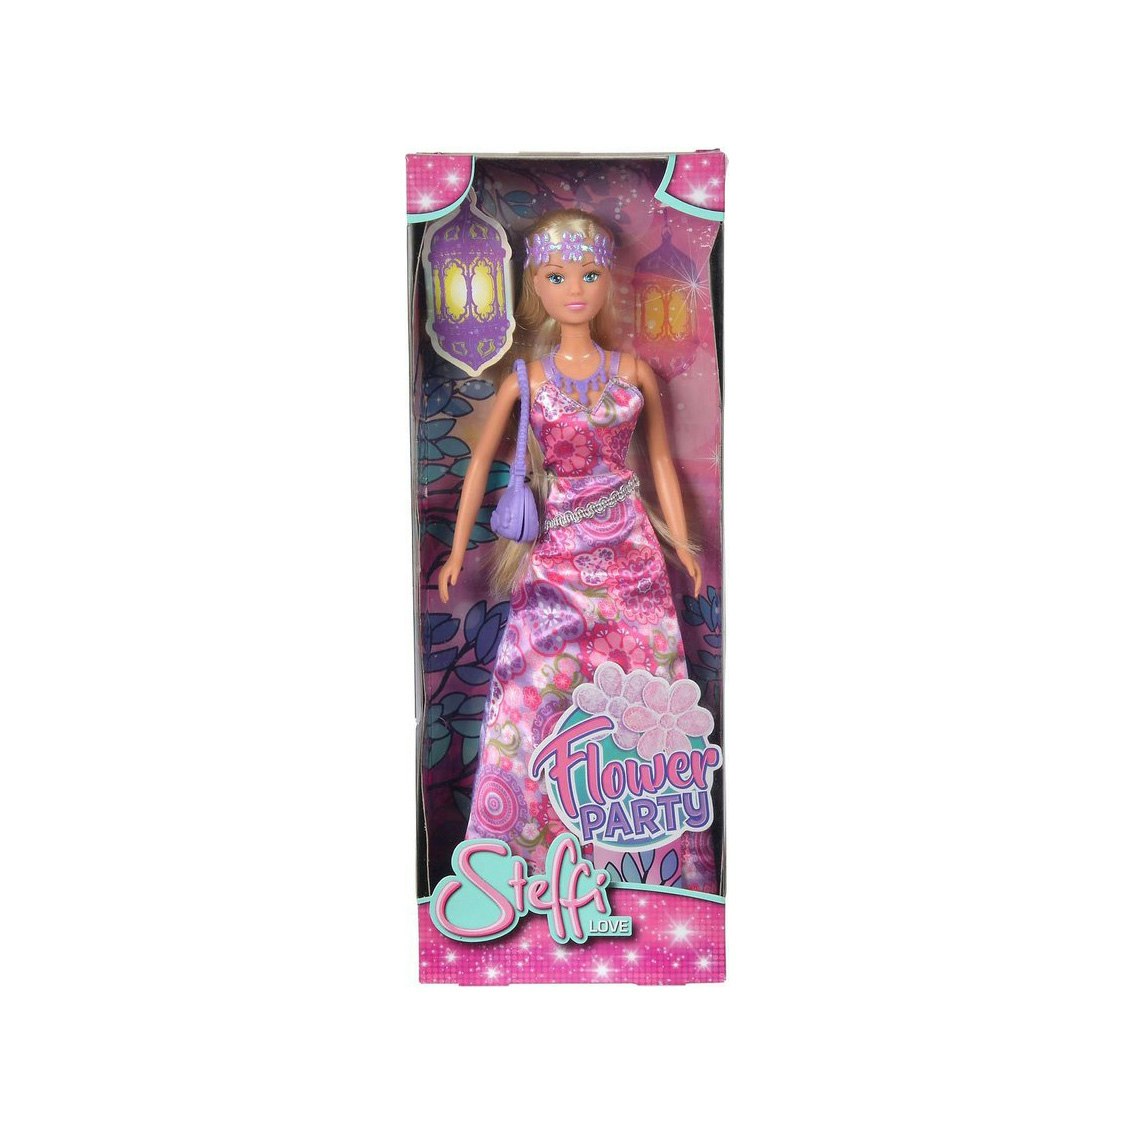 Denna dockan kommer med blondt hår i en indisk klänning med tillhörande accessoarer